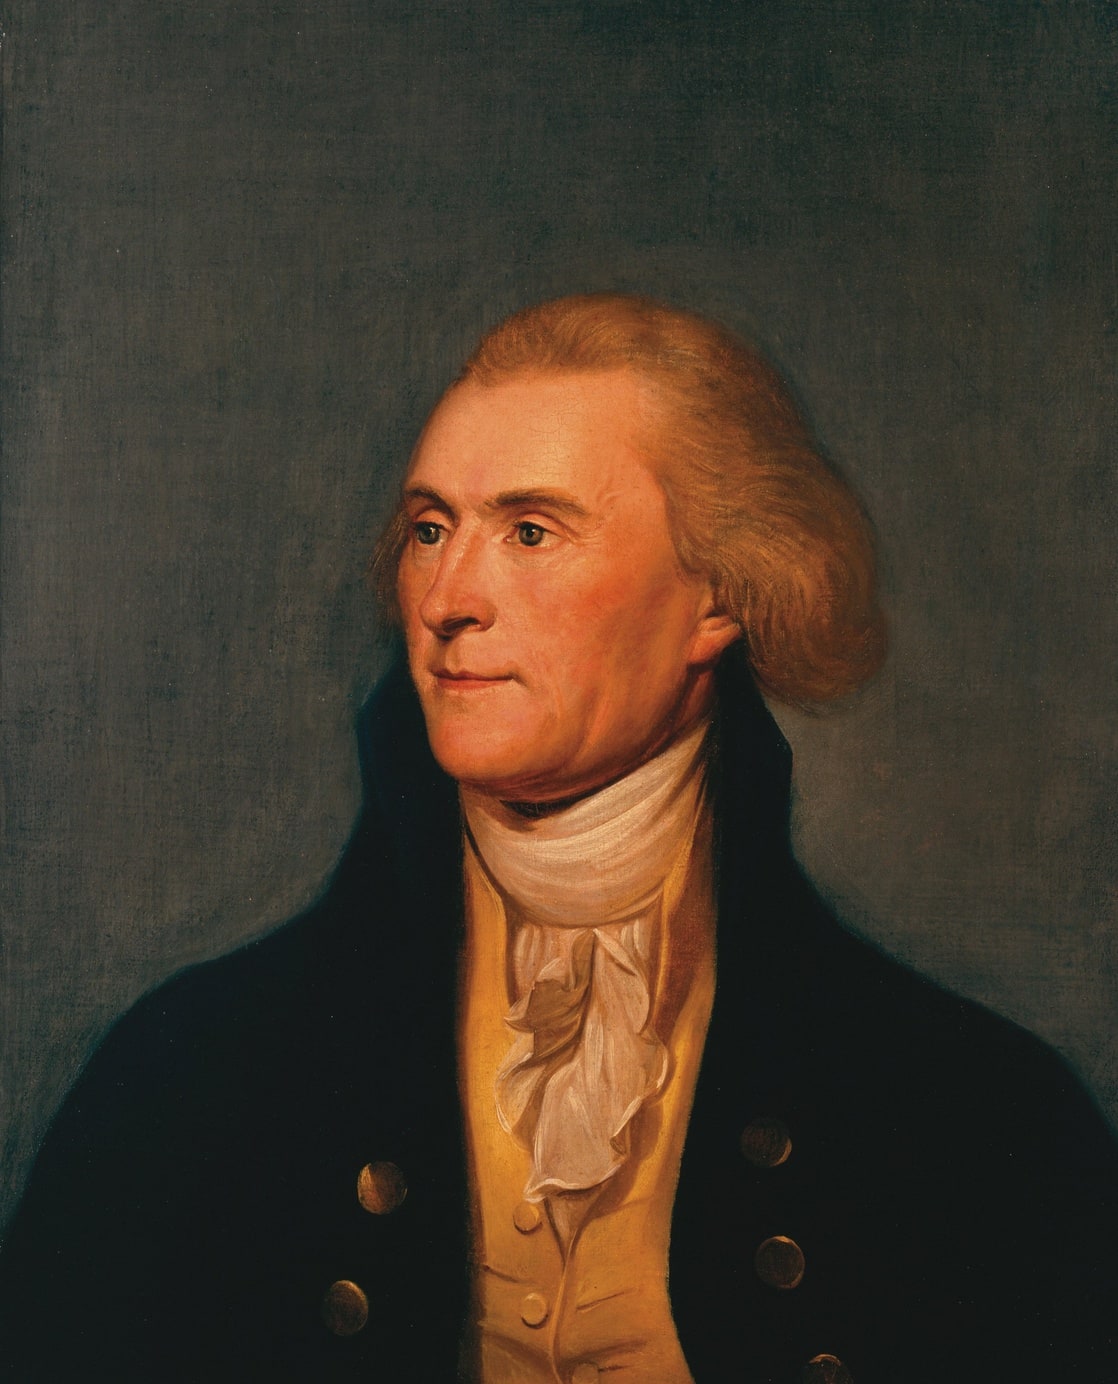 Thomas Jefferson (I)